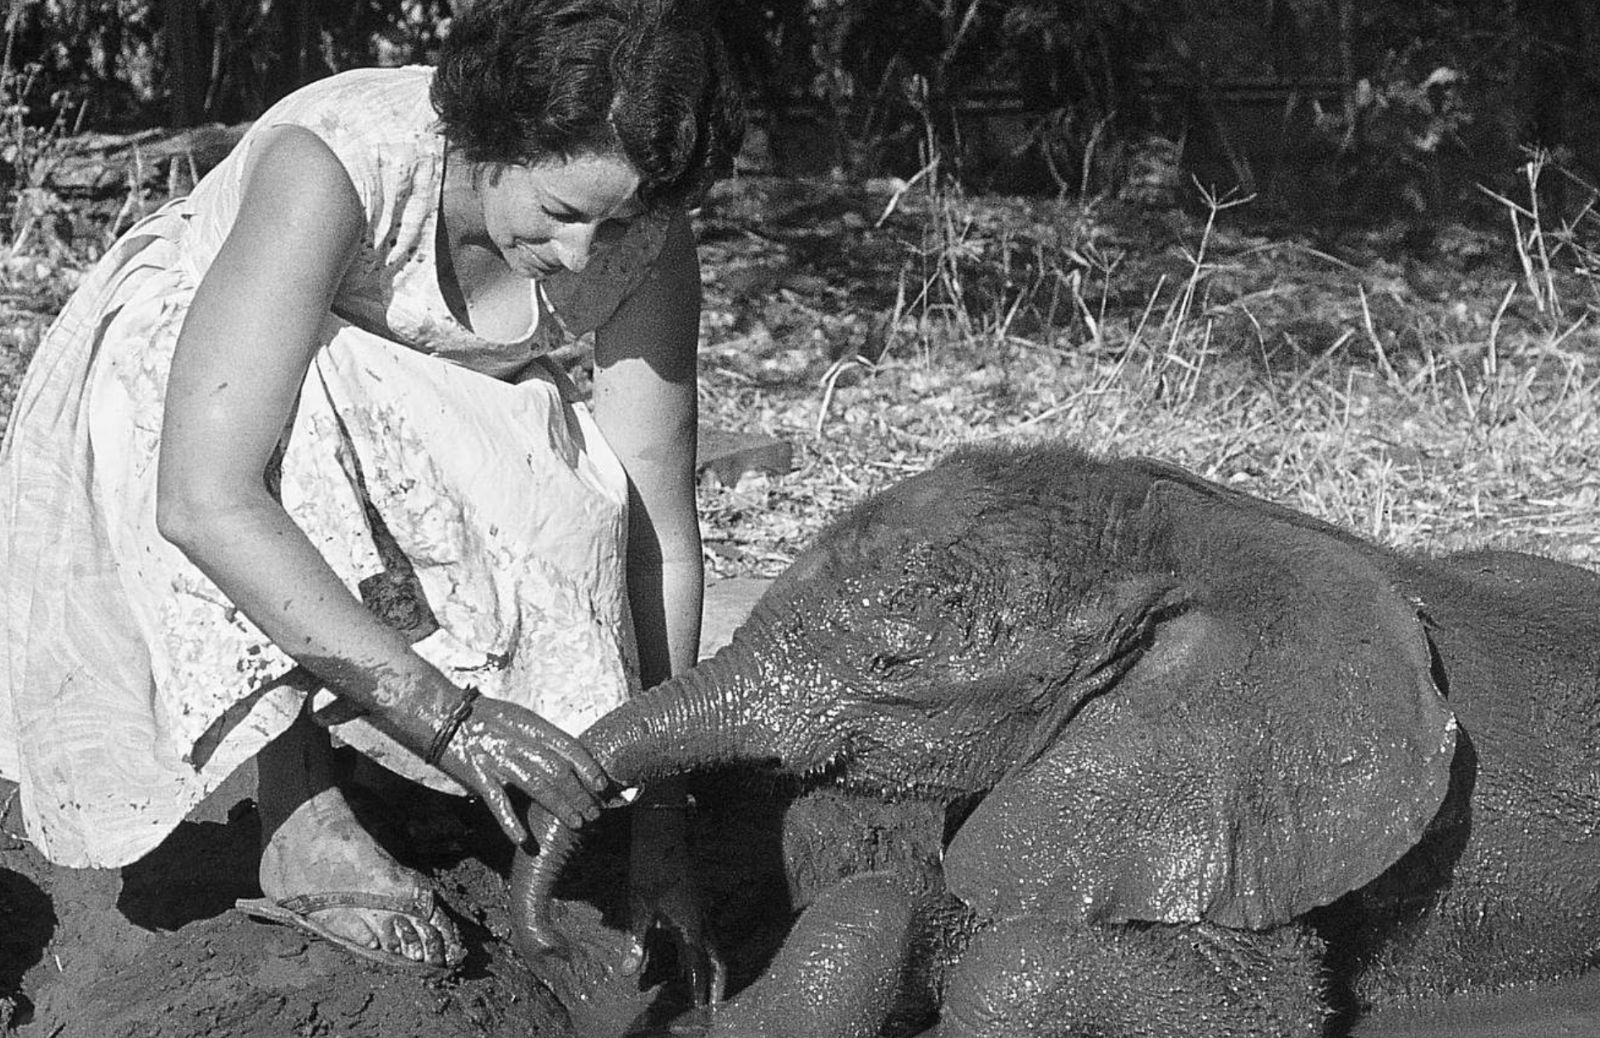 Un orfanotrofio per elefanti: la storia di Daphne Sheldrick